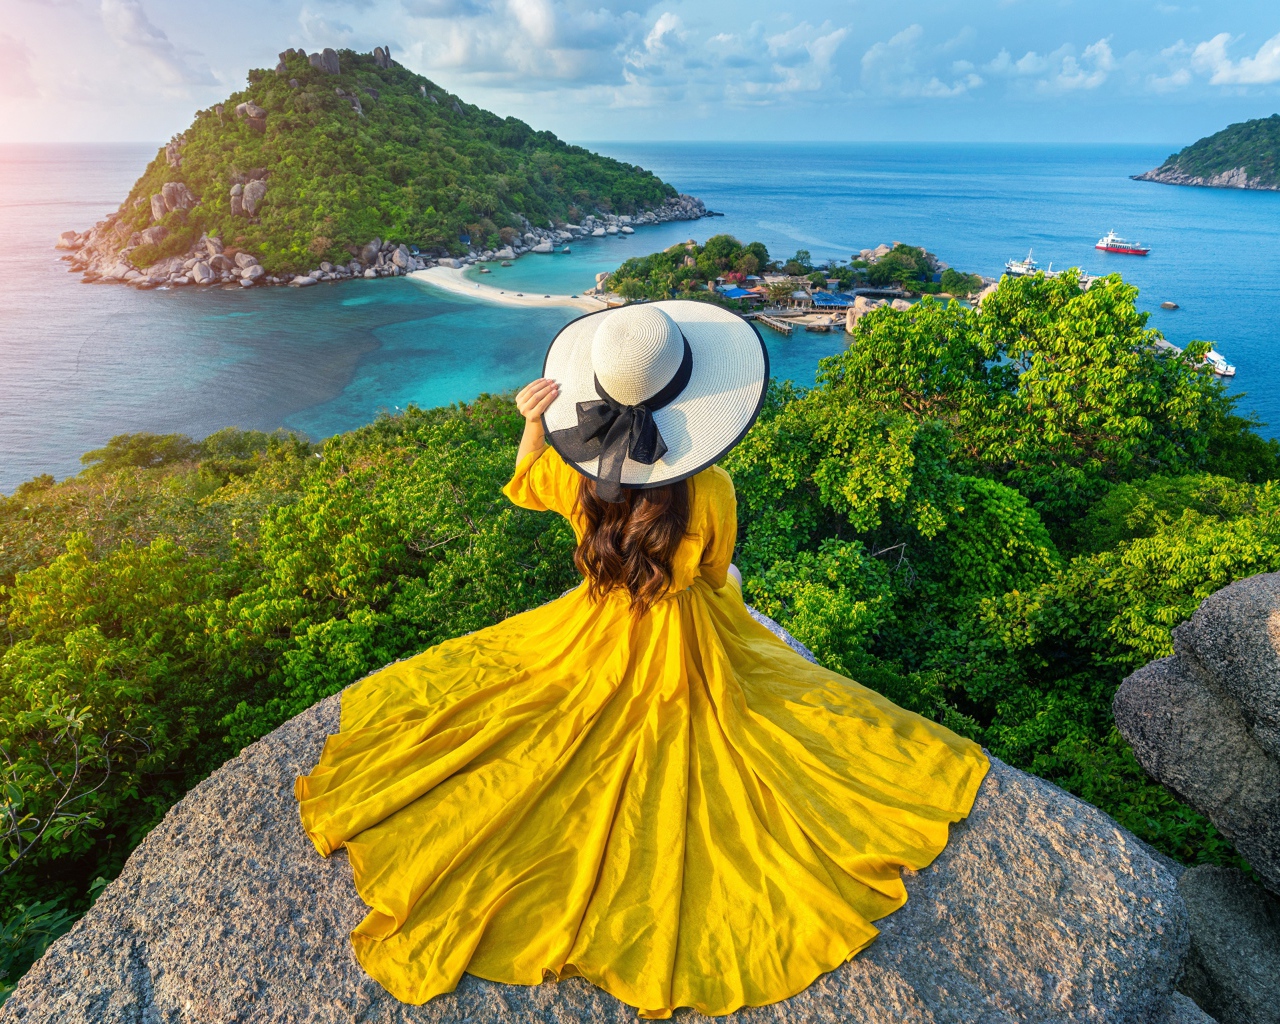 Девушка в красивом желтом платье сидит на камне с видом на море